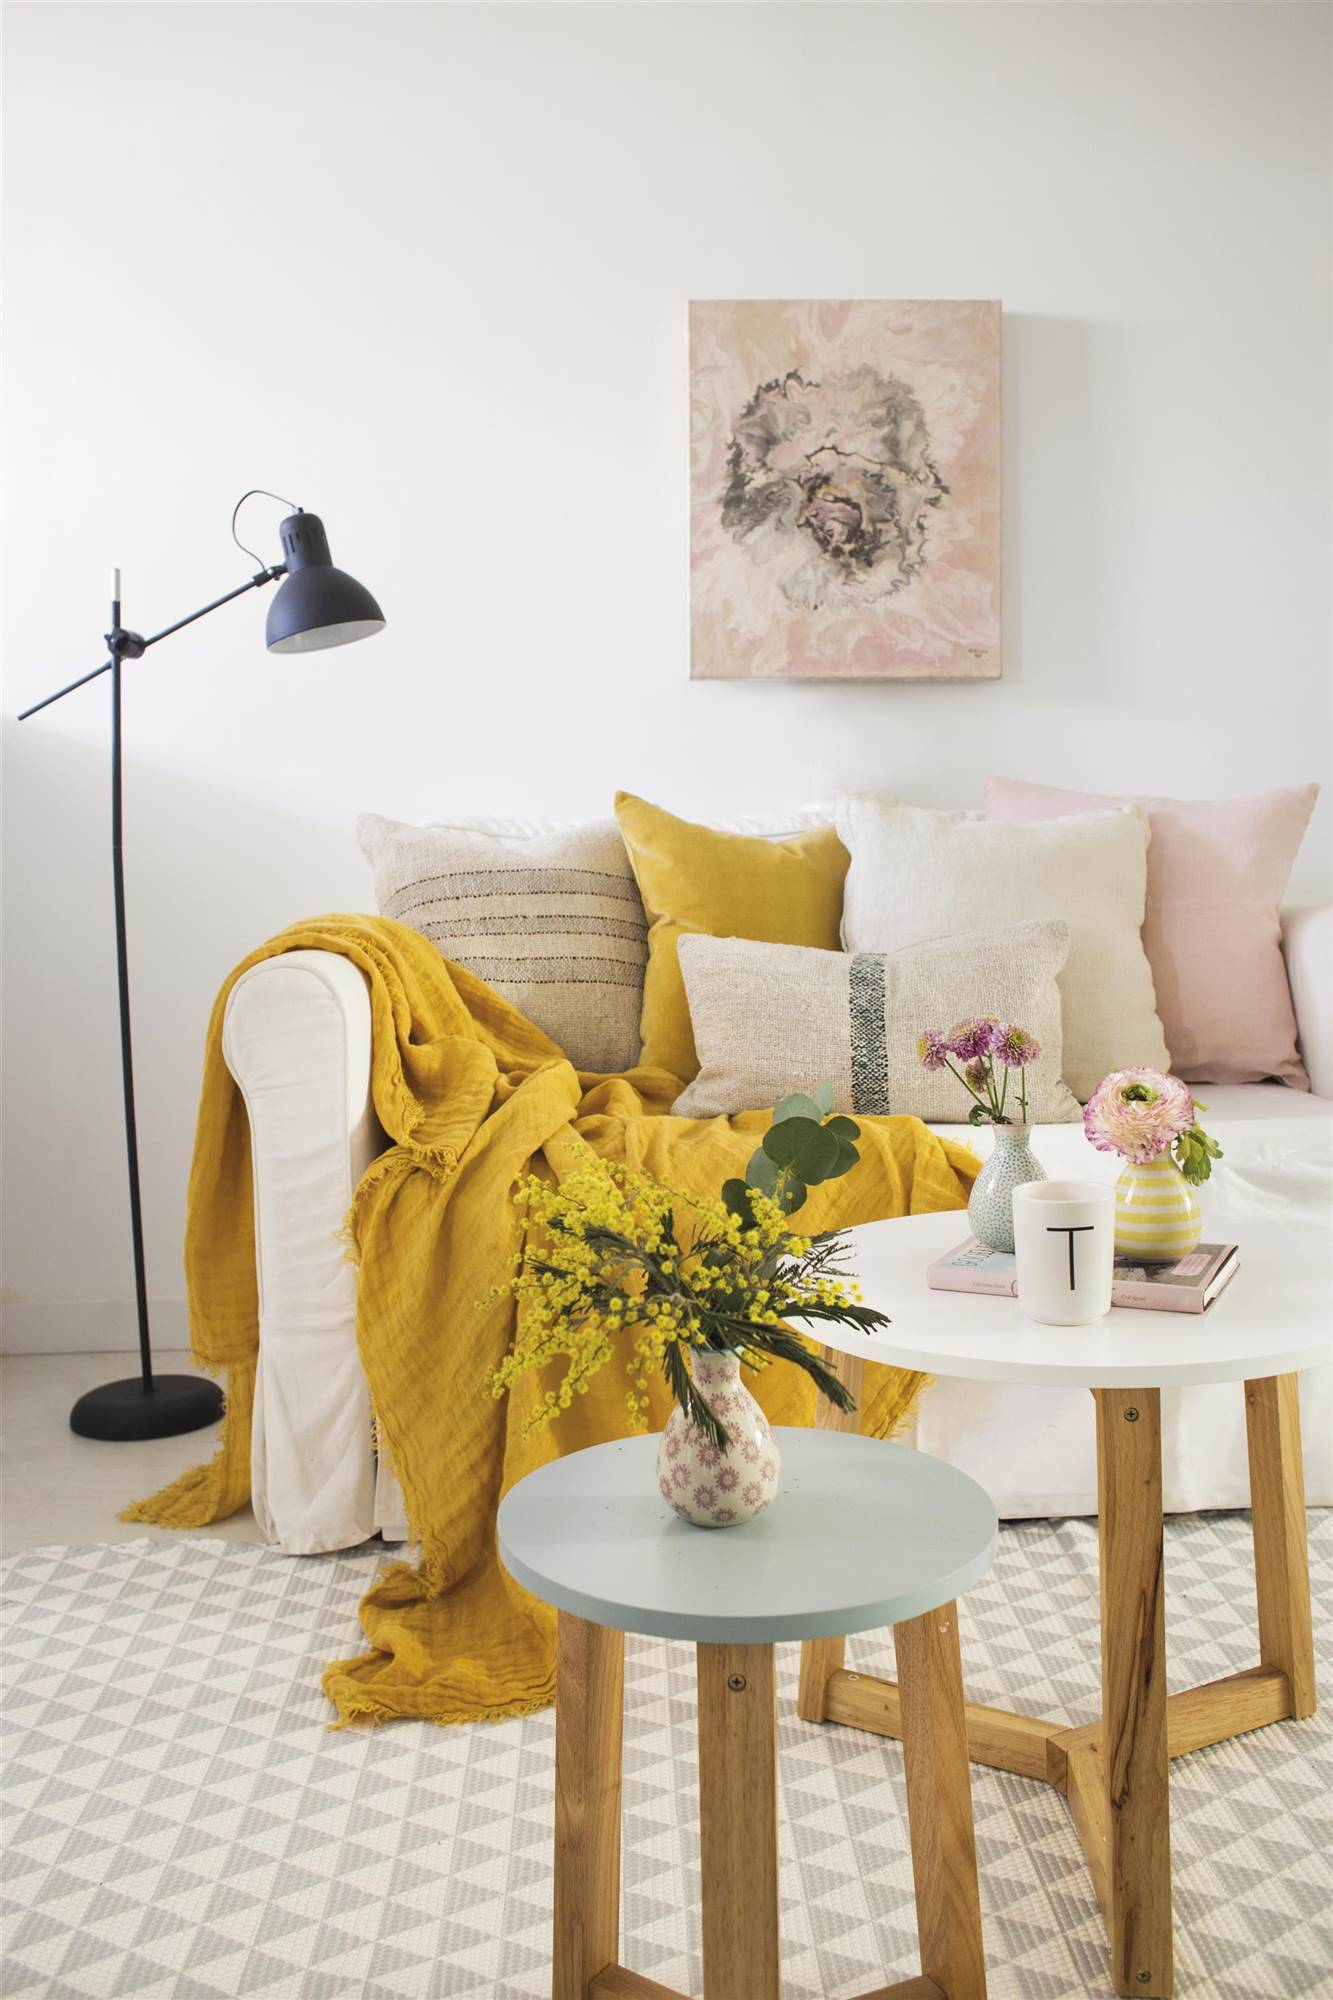 mesas-de-madera-de-colores-pastel-y-sofa-blanco-con-cojines-de-colores. Una pieza "con curvas", buena energía